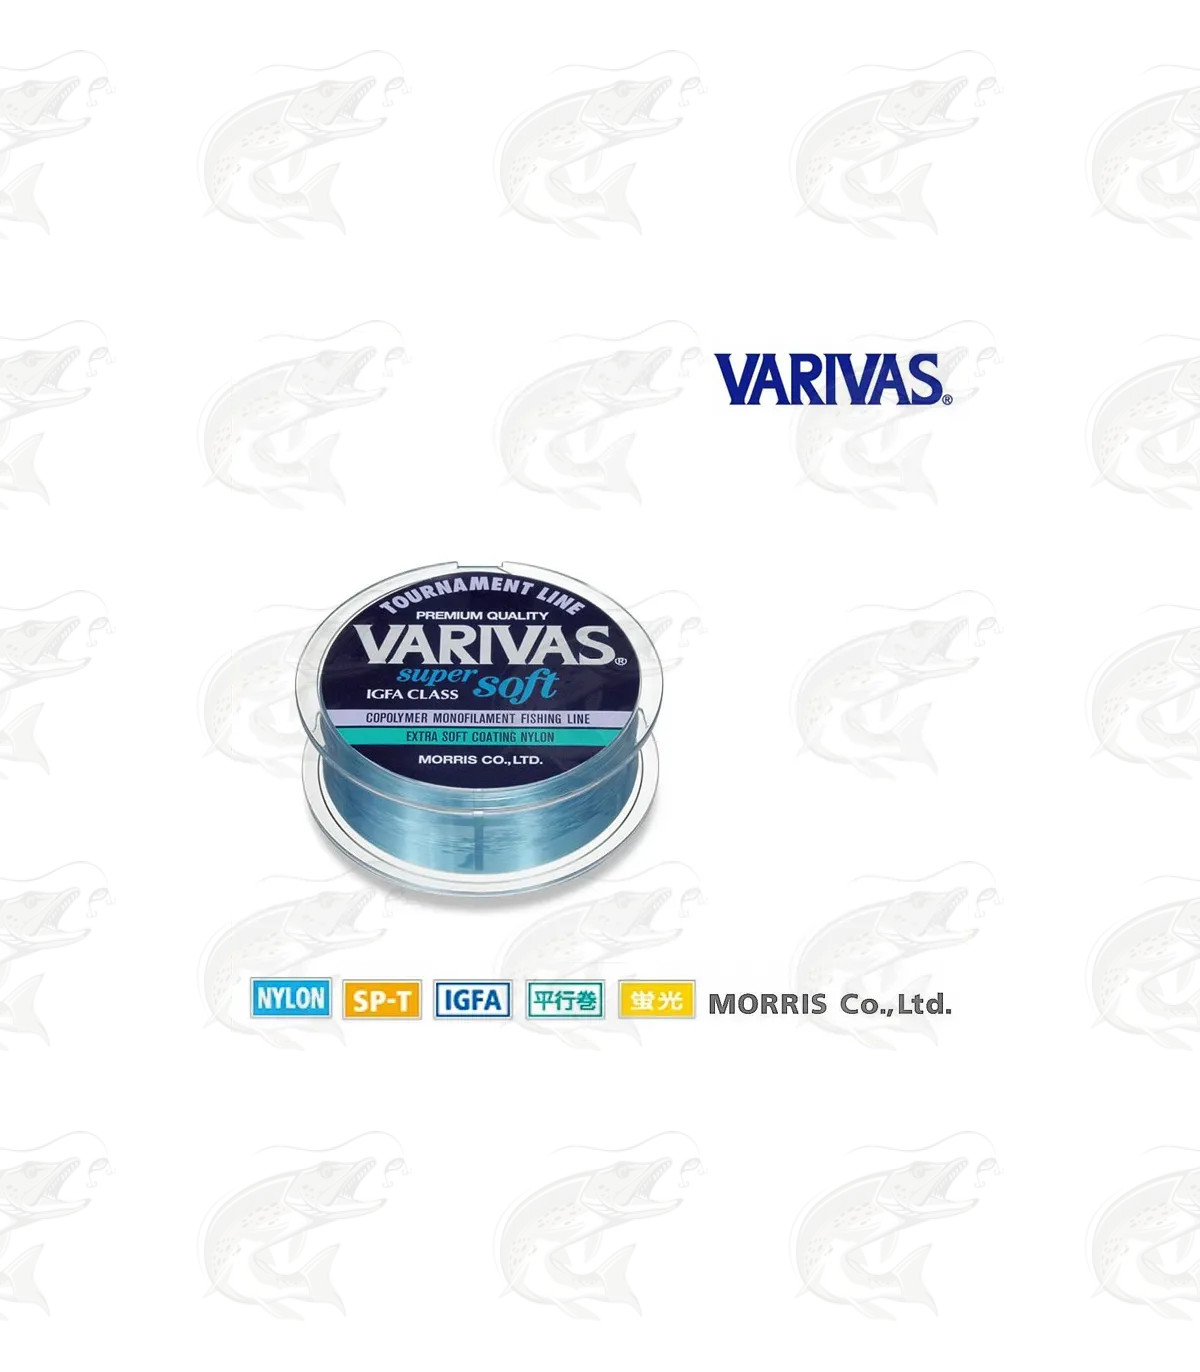 Varivas Tournament Super Soft monofilament